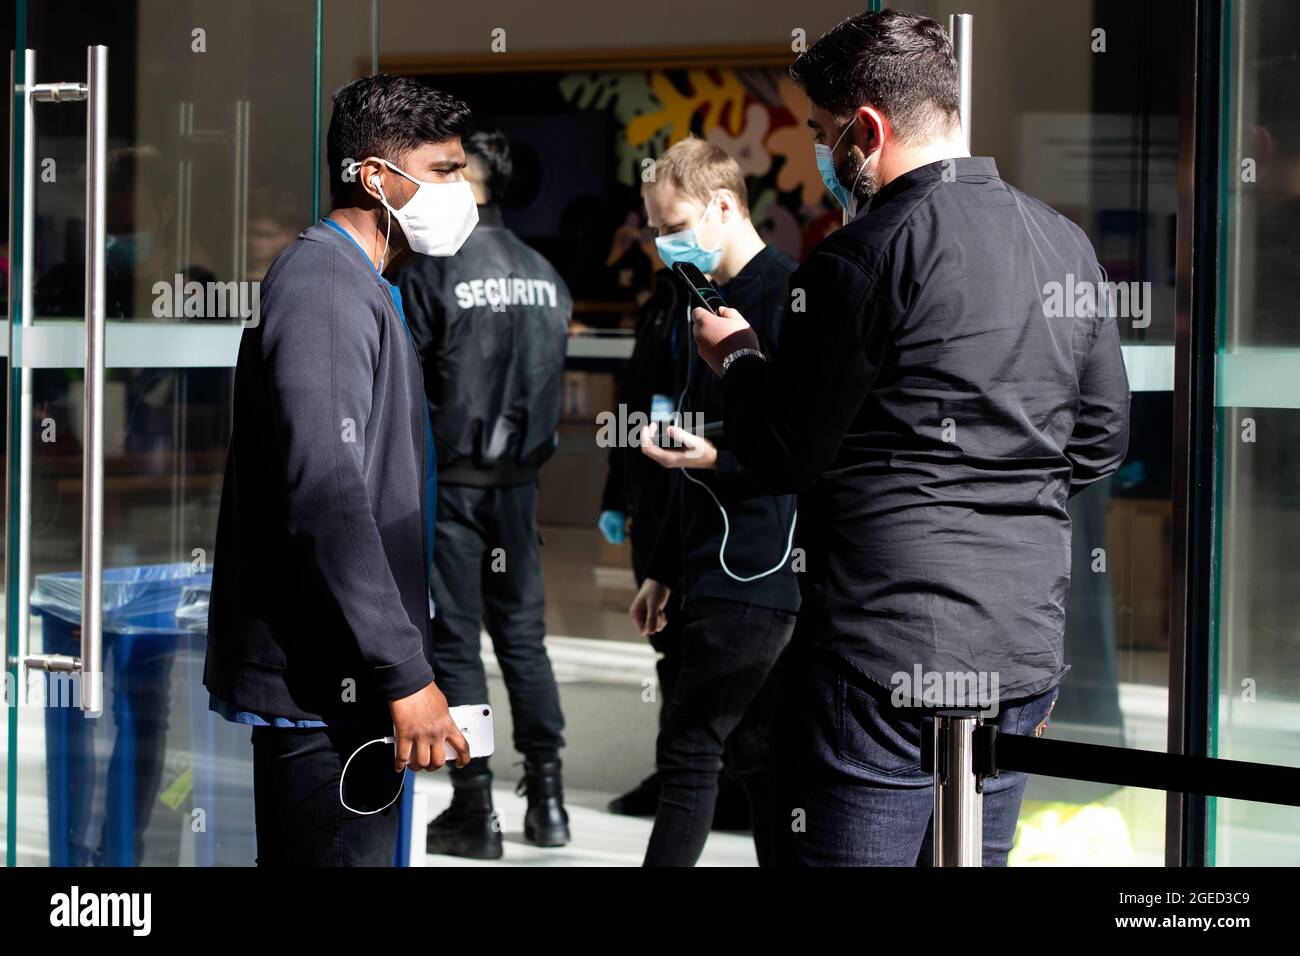 Sydney, Australia, 6 luglio 2020. I clienti dell'Apple Store Sydney indossano maschere facciali di protezione. Sydney continua ad agevolare la chiusura a chiave poiché il confine tra il nuovo Galles del Sud e Victoria sarà chiuso dalle 23:59. Credito notturno di martedì: Pete Dovgan/Speed Media/Alamy Live News Foto Stock